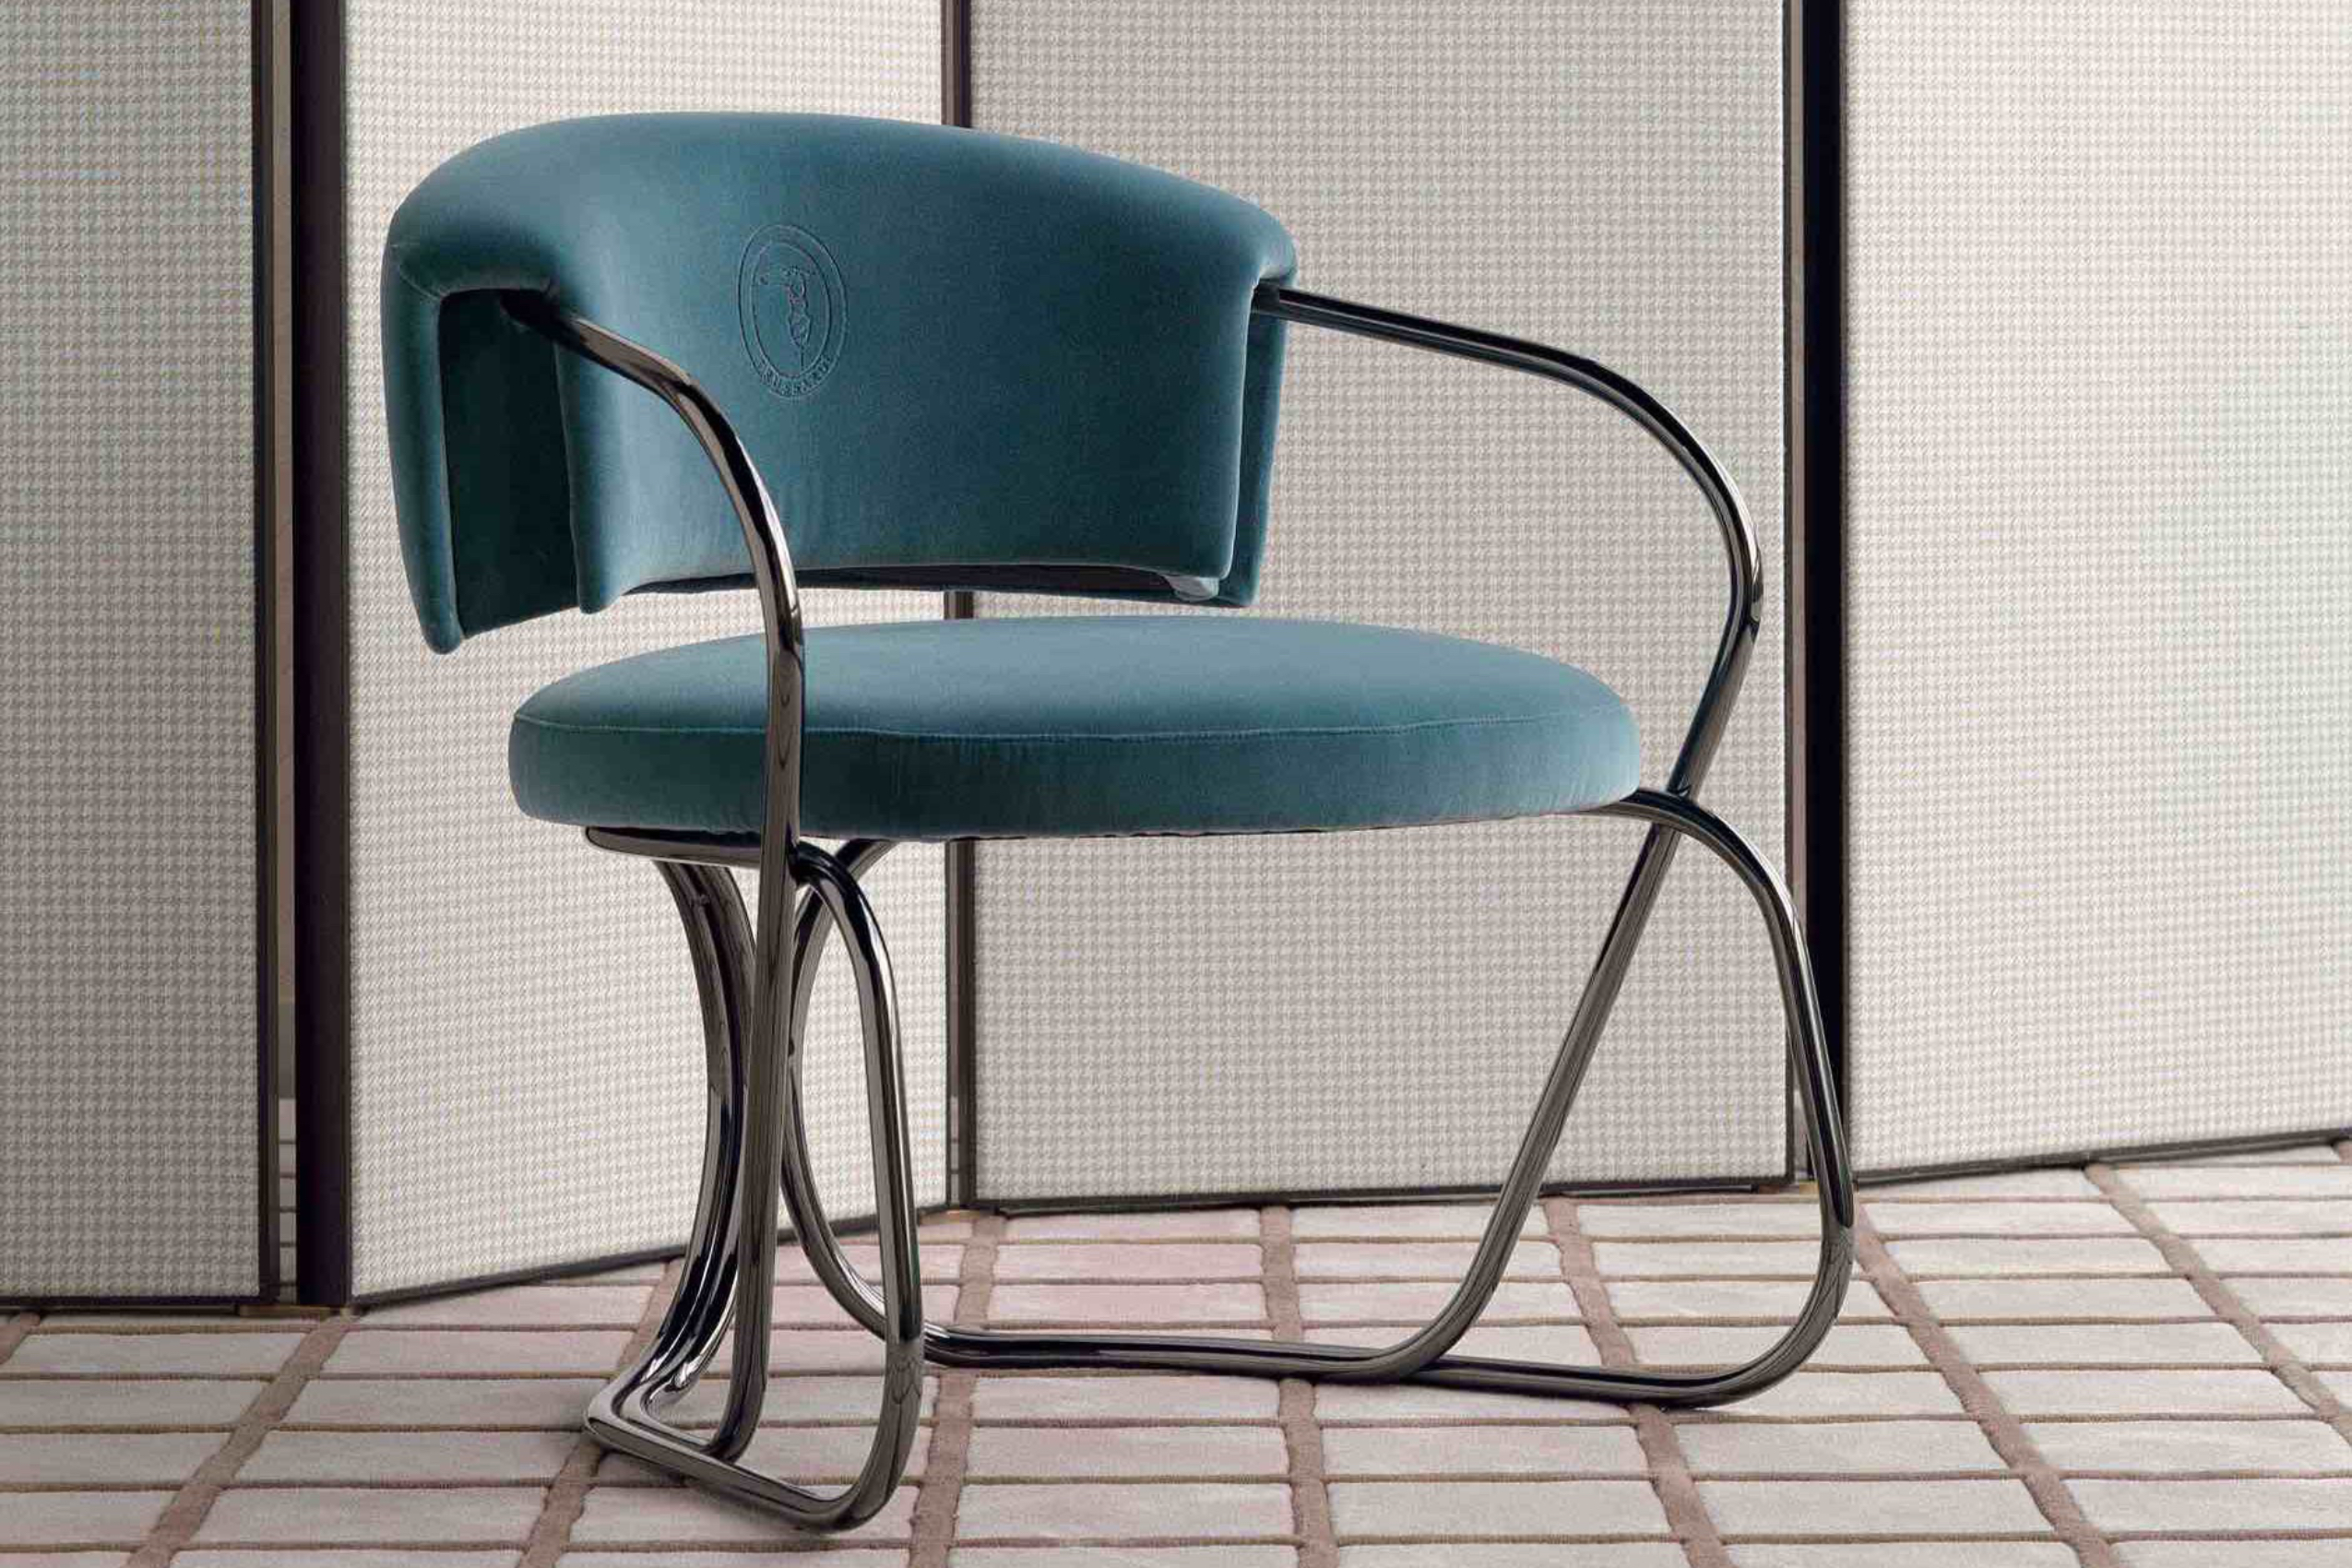 A-Round 系列扶手椅以其突顯的管狀框架原始結構扶手椅，發展之初即被譽為該系列的代表作。